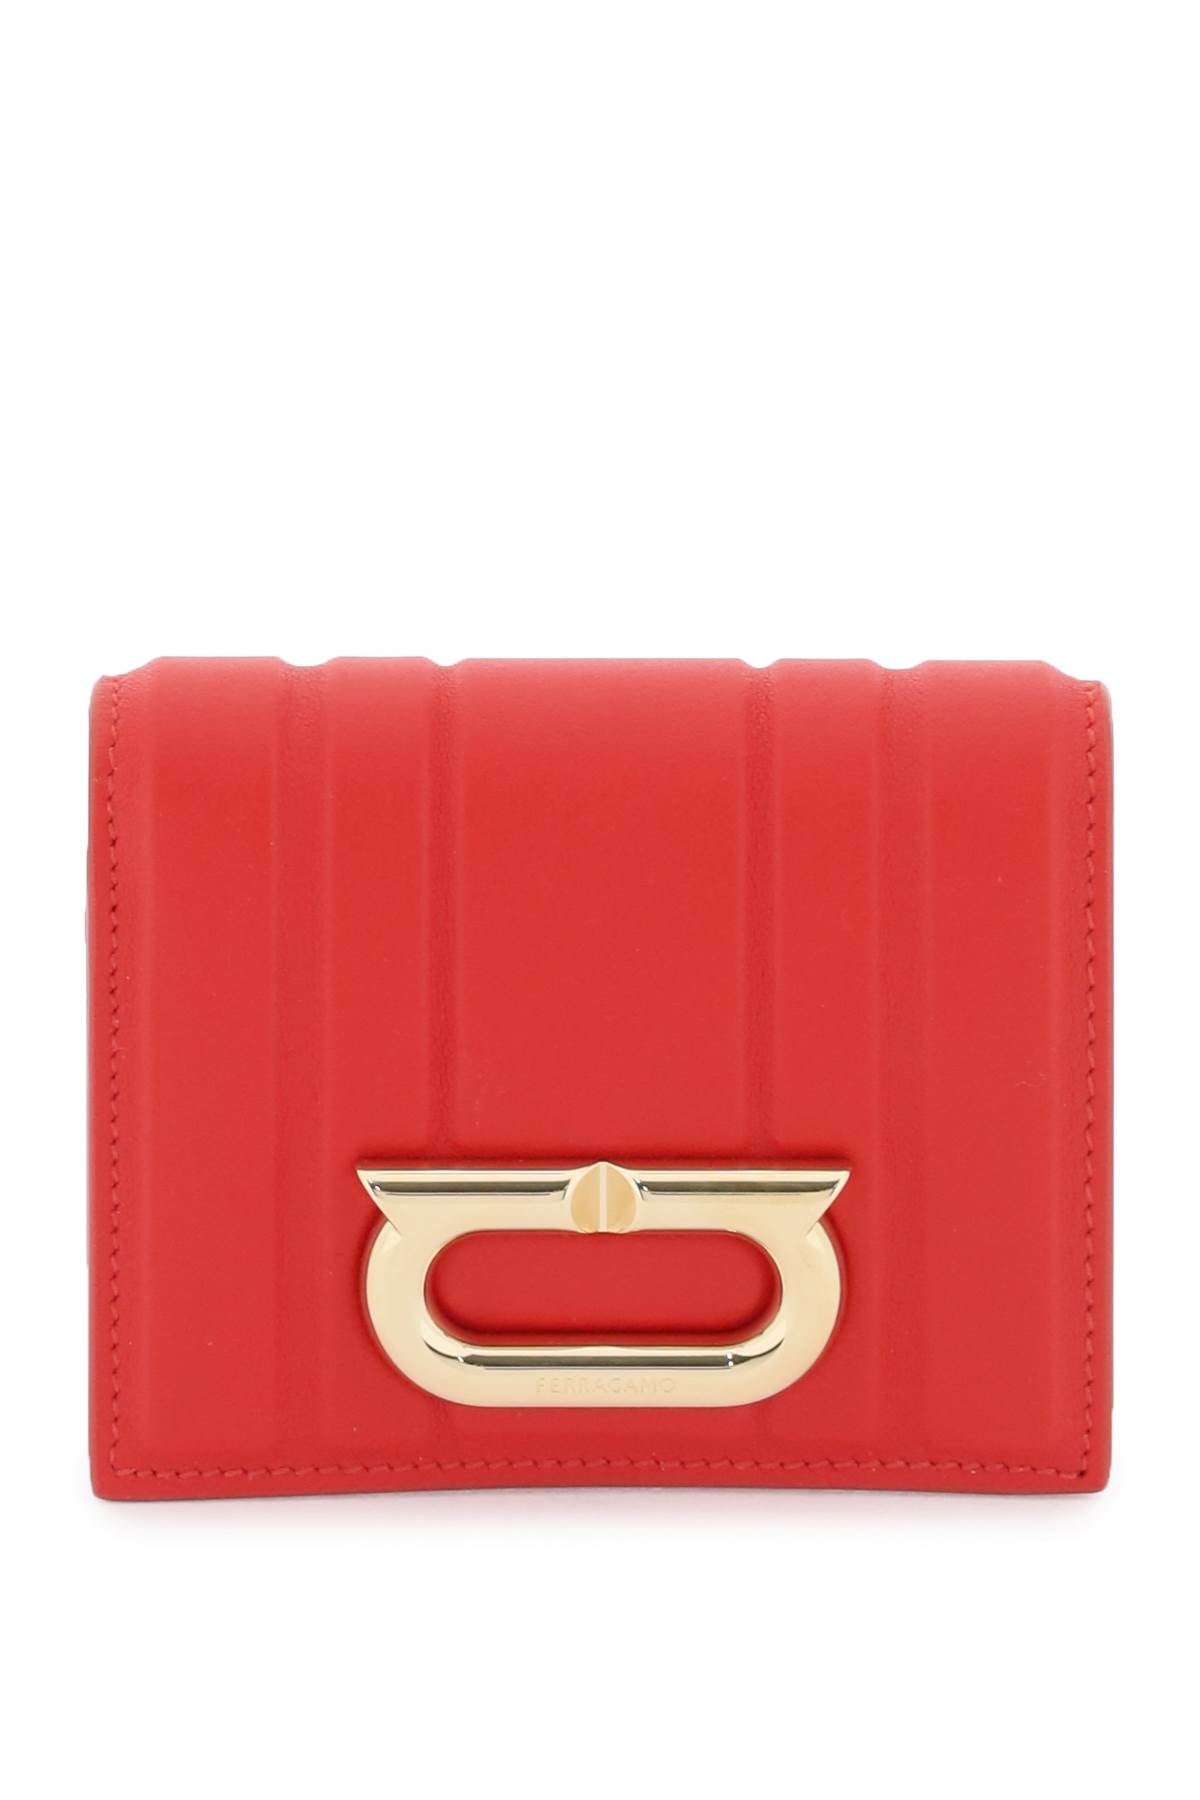 محفظة جلدية حمراء مطفية بمشبك Gancini للنساء